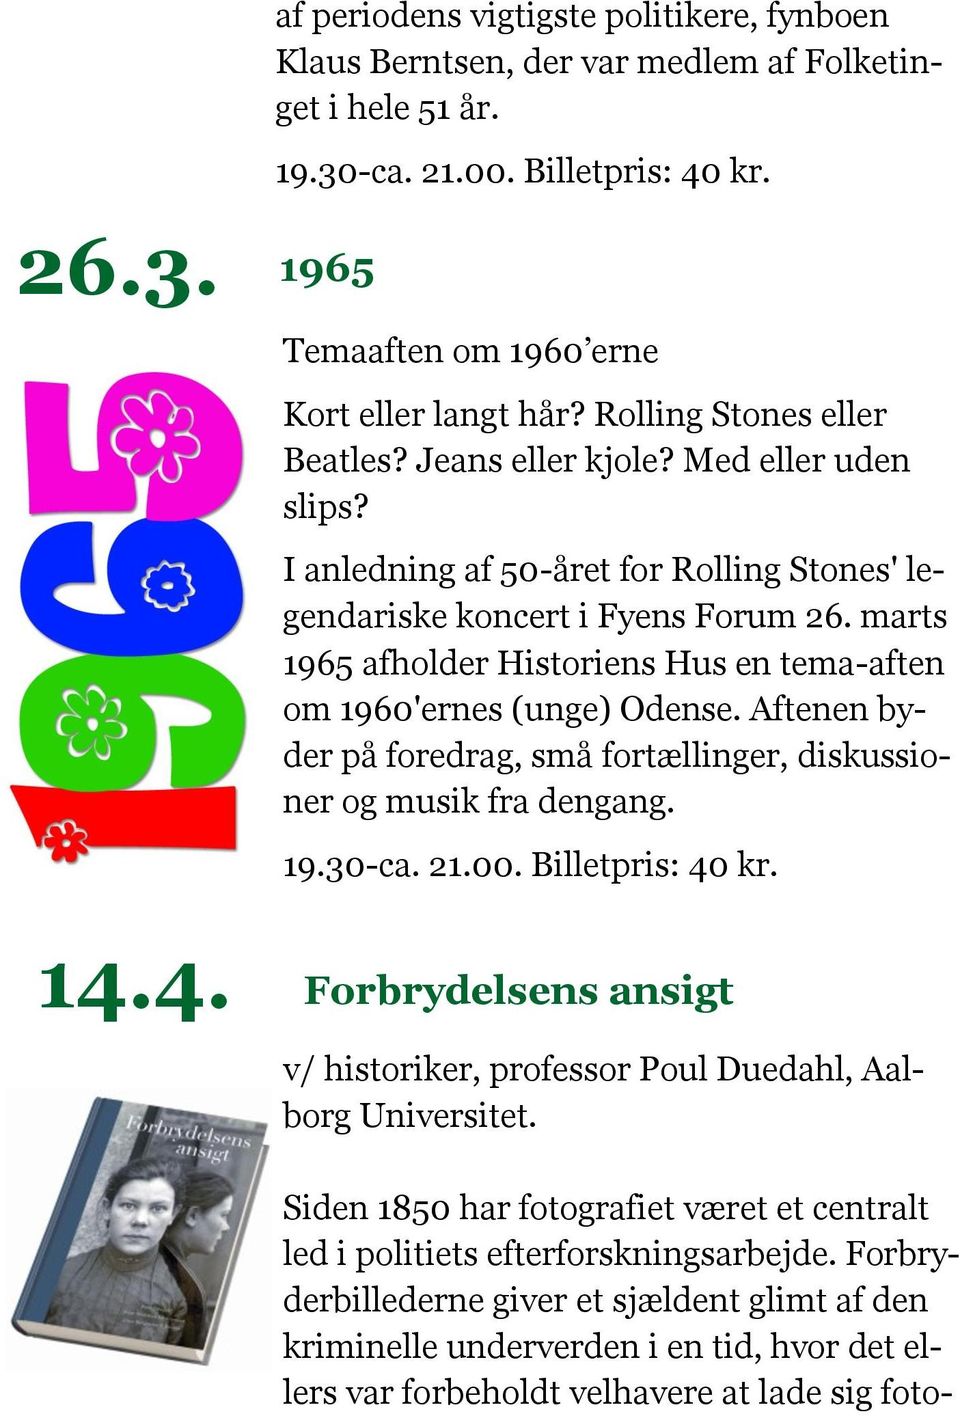 marts 1965 afholder Historiens Hus en tema-aften om 1960'ernes (unge) Odense. Aftenen byder på foredrag, små fortællinger, diskussioner og musik fra dengang. 19.30-ca. 21.00. Billetpris: 40 kr.